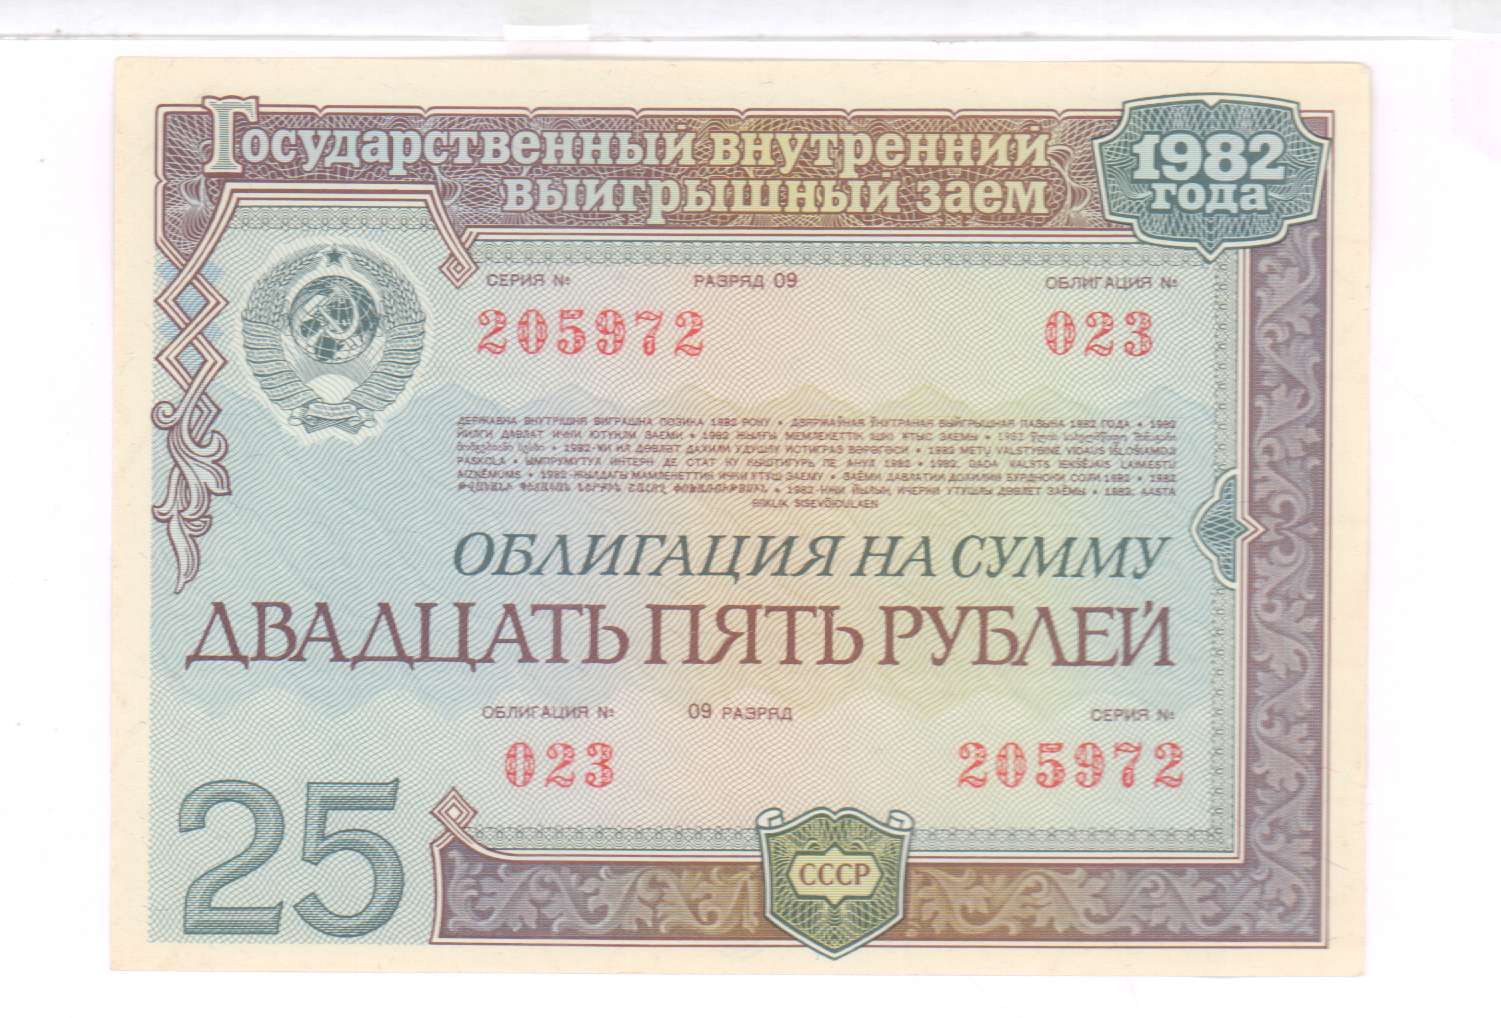 Ценные бумаги государственного займа. Государственный внутренний выигрышный заем 1982 года 50 рублей. Облигация. Государственный внутренний выигрышный заем 1982 года. Облигации внутреннего выигрышного займа 1982 года.